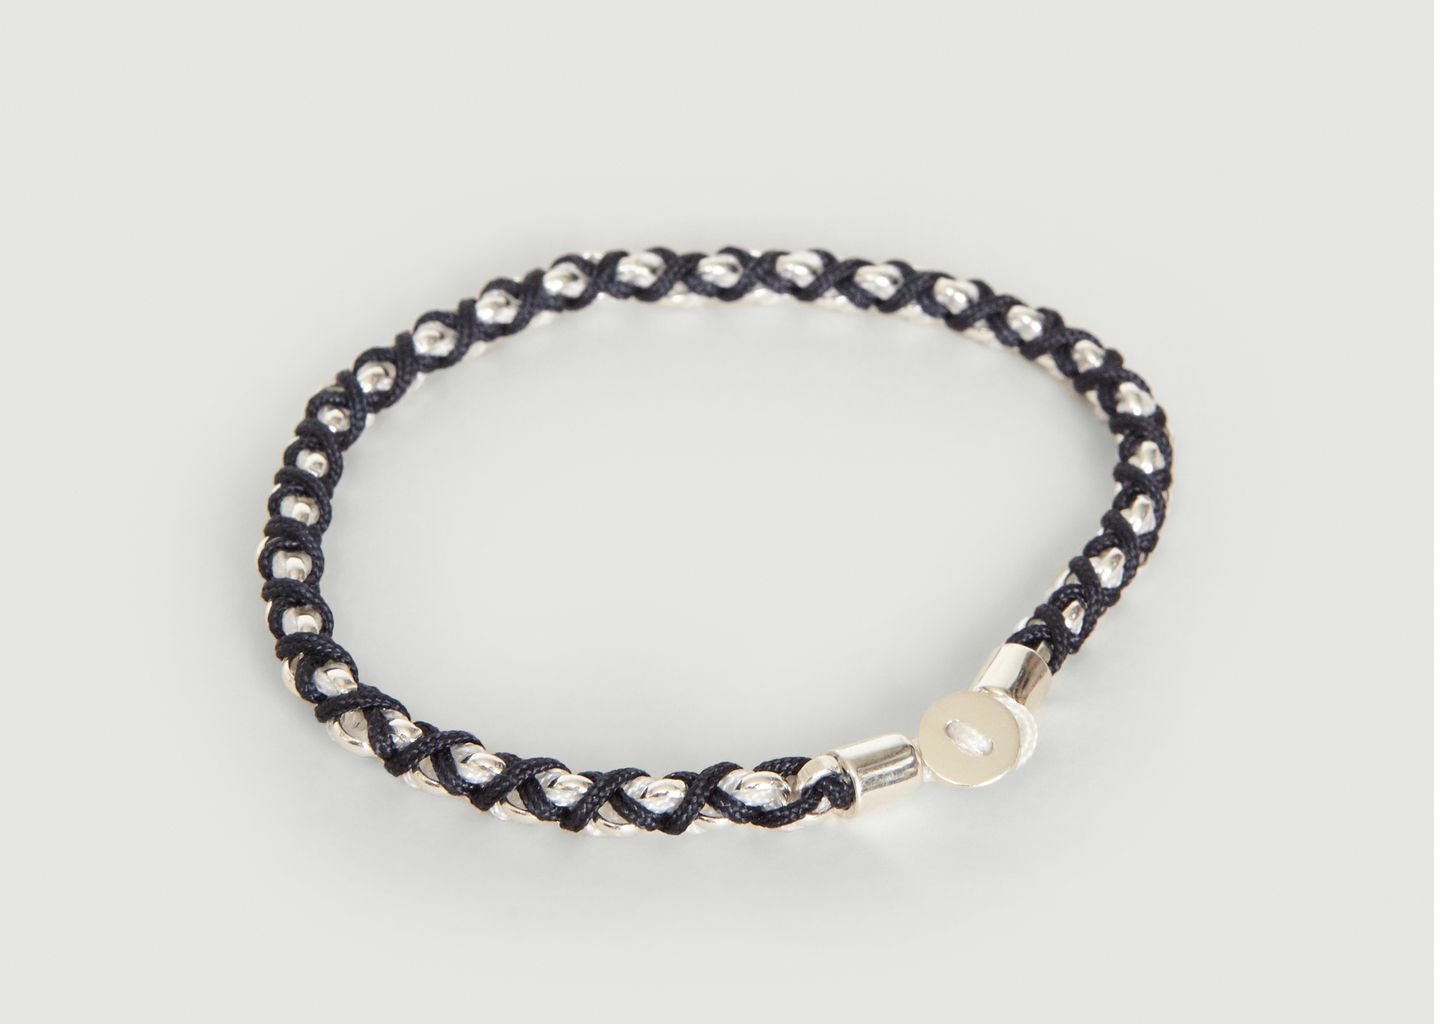 Bracelet Nexus Chain - Miansai